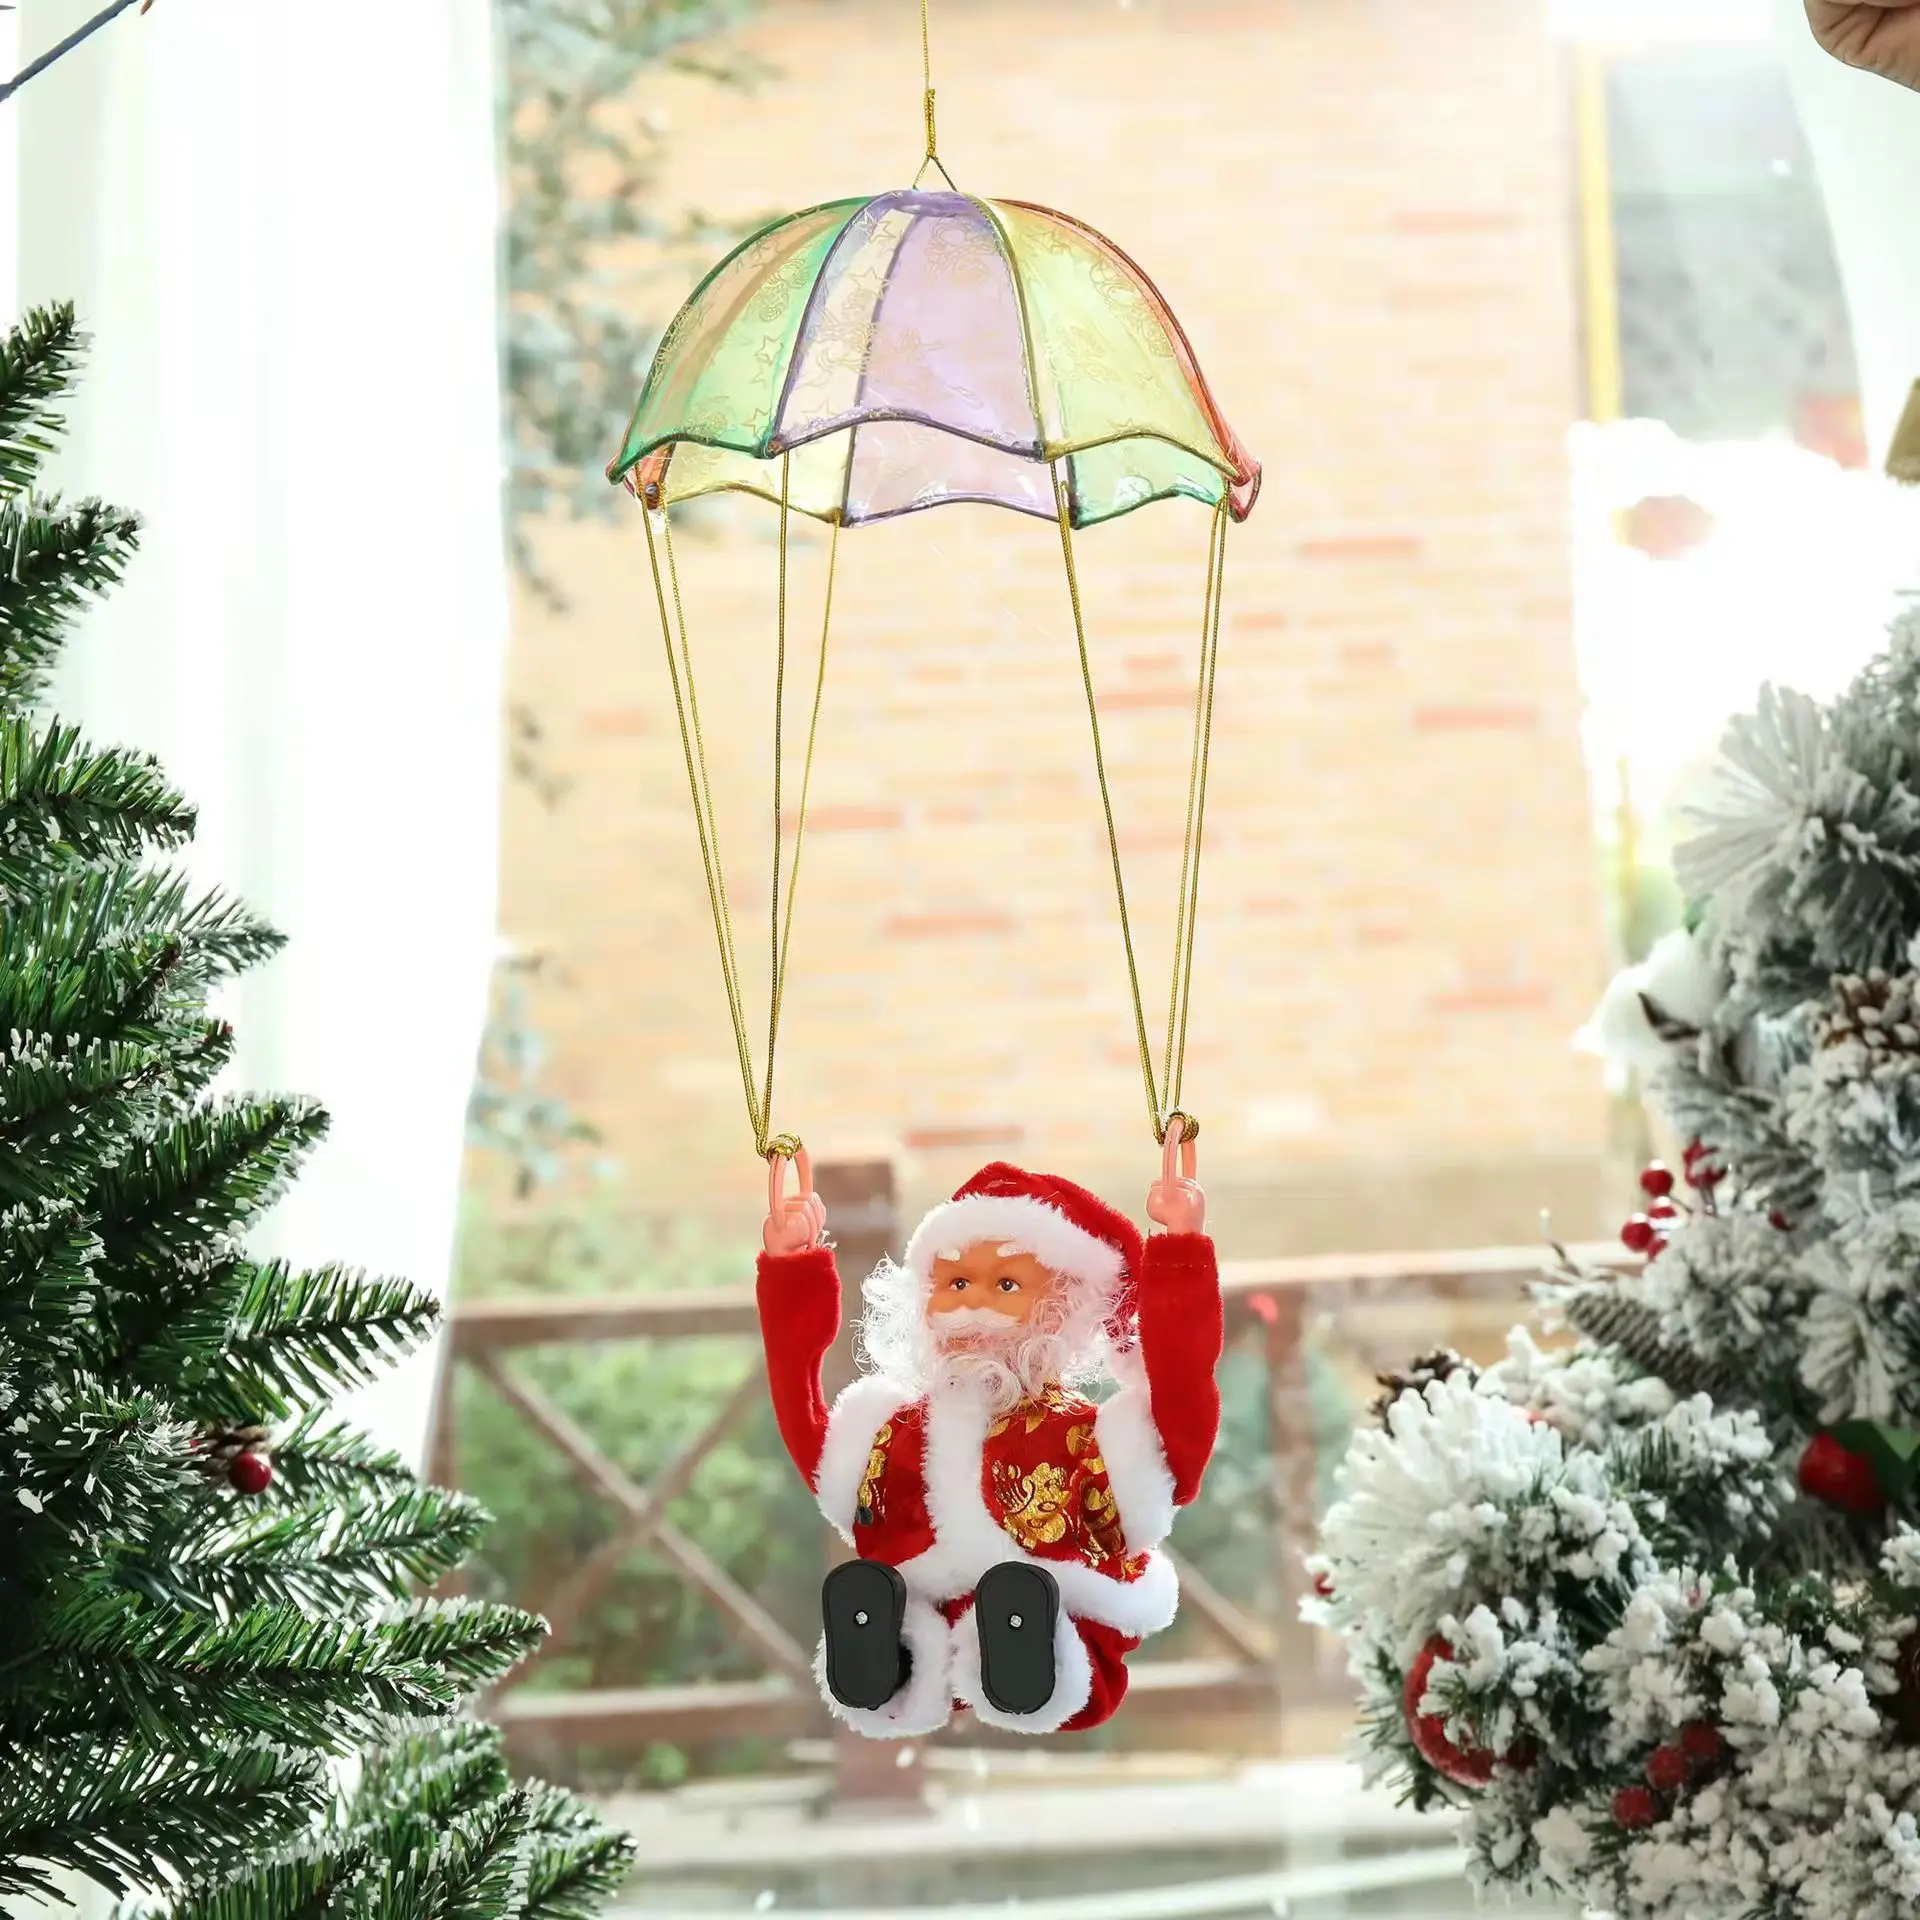 

Лестница парашютный сомерзавр электрическая музыка кукла Санта Клауса рождественские украшения детские игрушки подарки